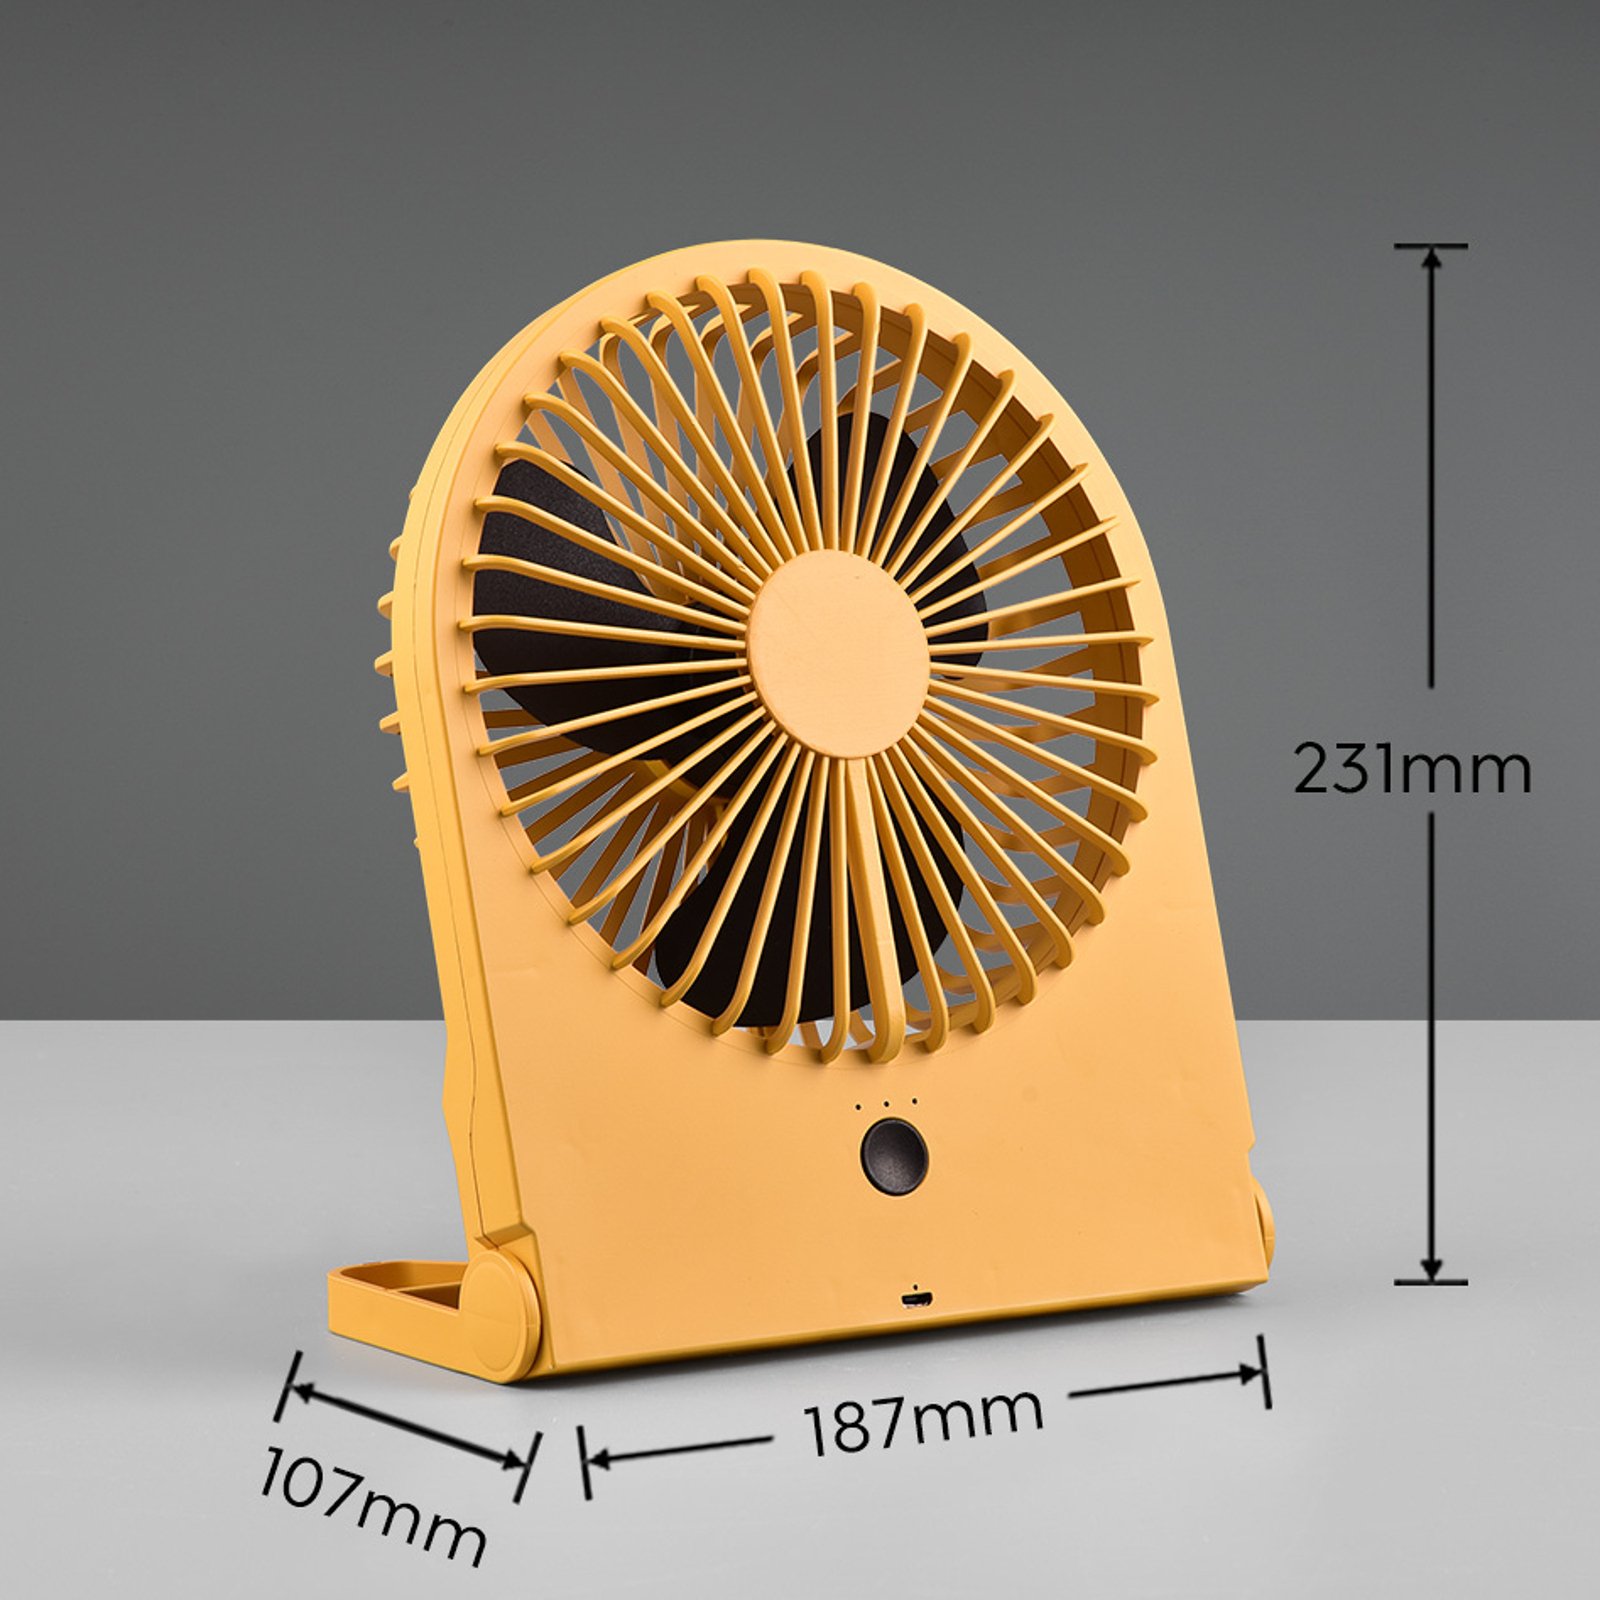 Breezy újratölthető asztali ventilátor, sárga színű